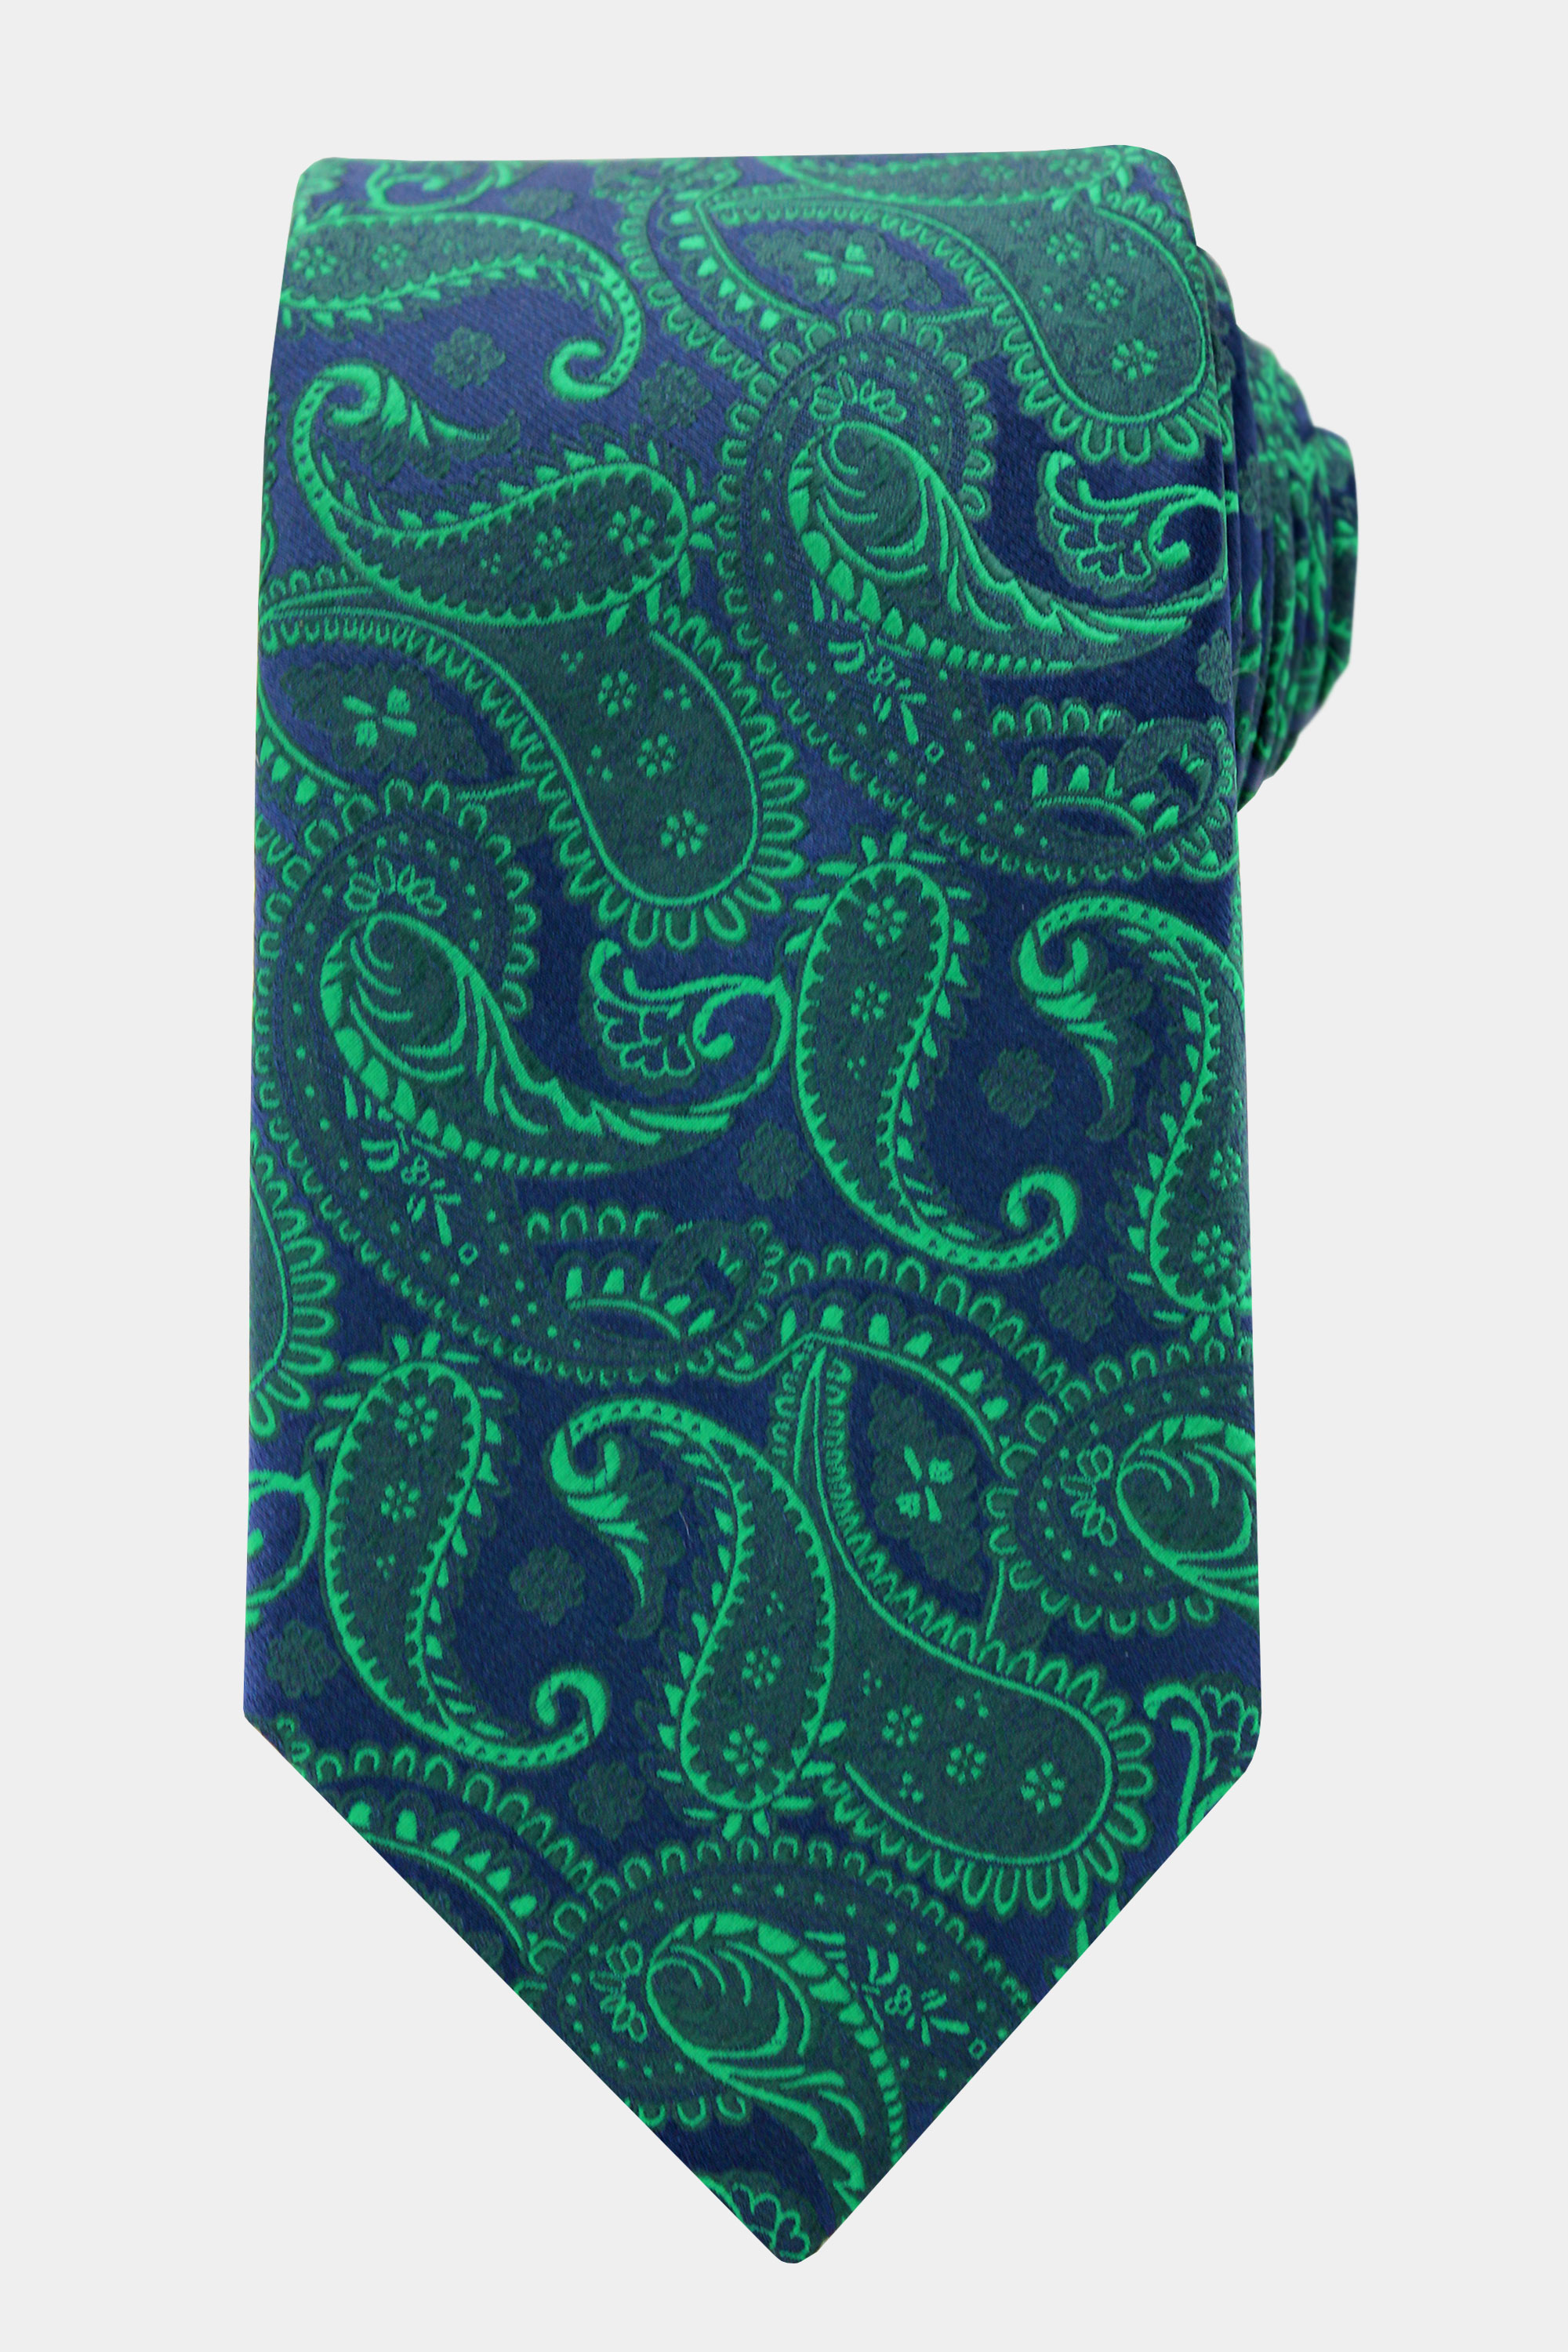 Emerald-Green-Paisley-Tie-from-Gentlemansguru.com